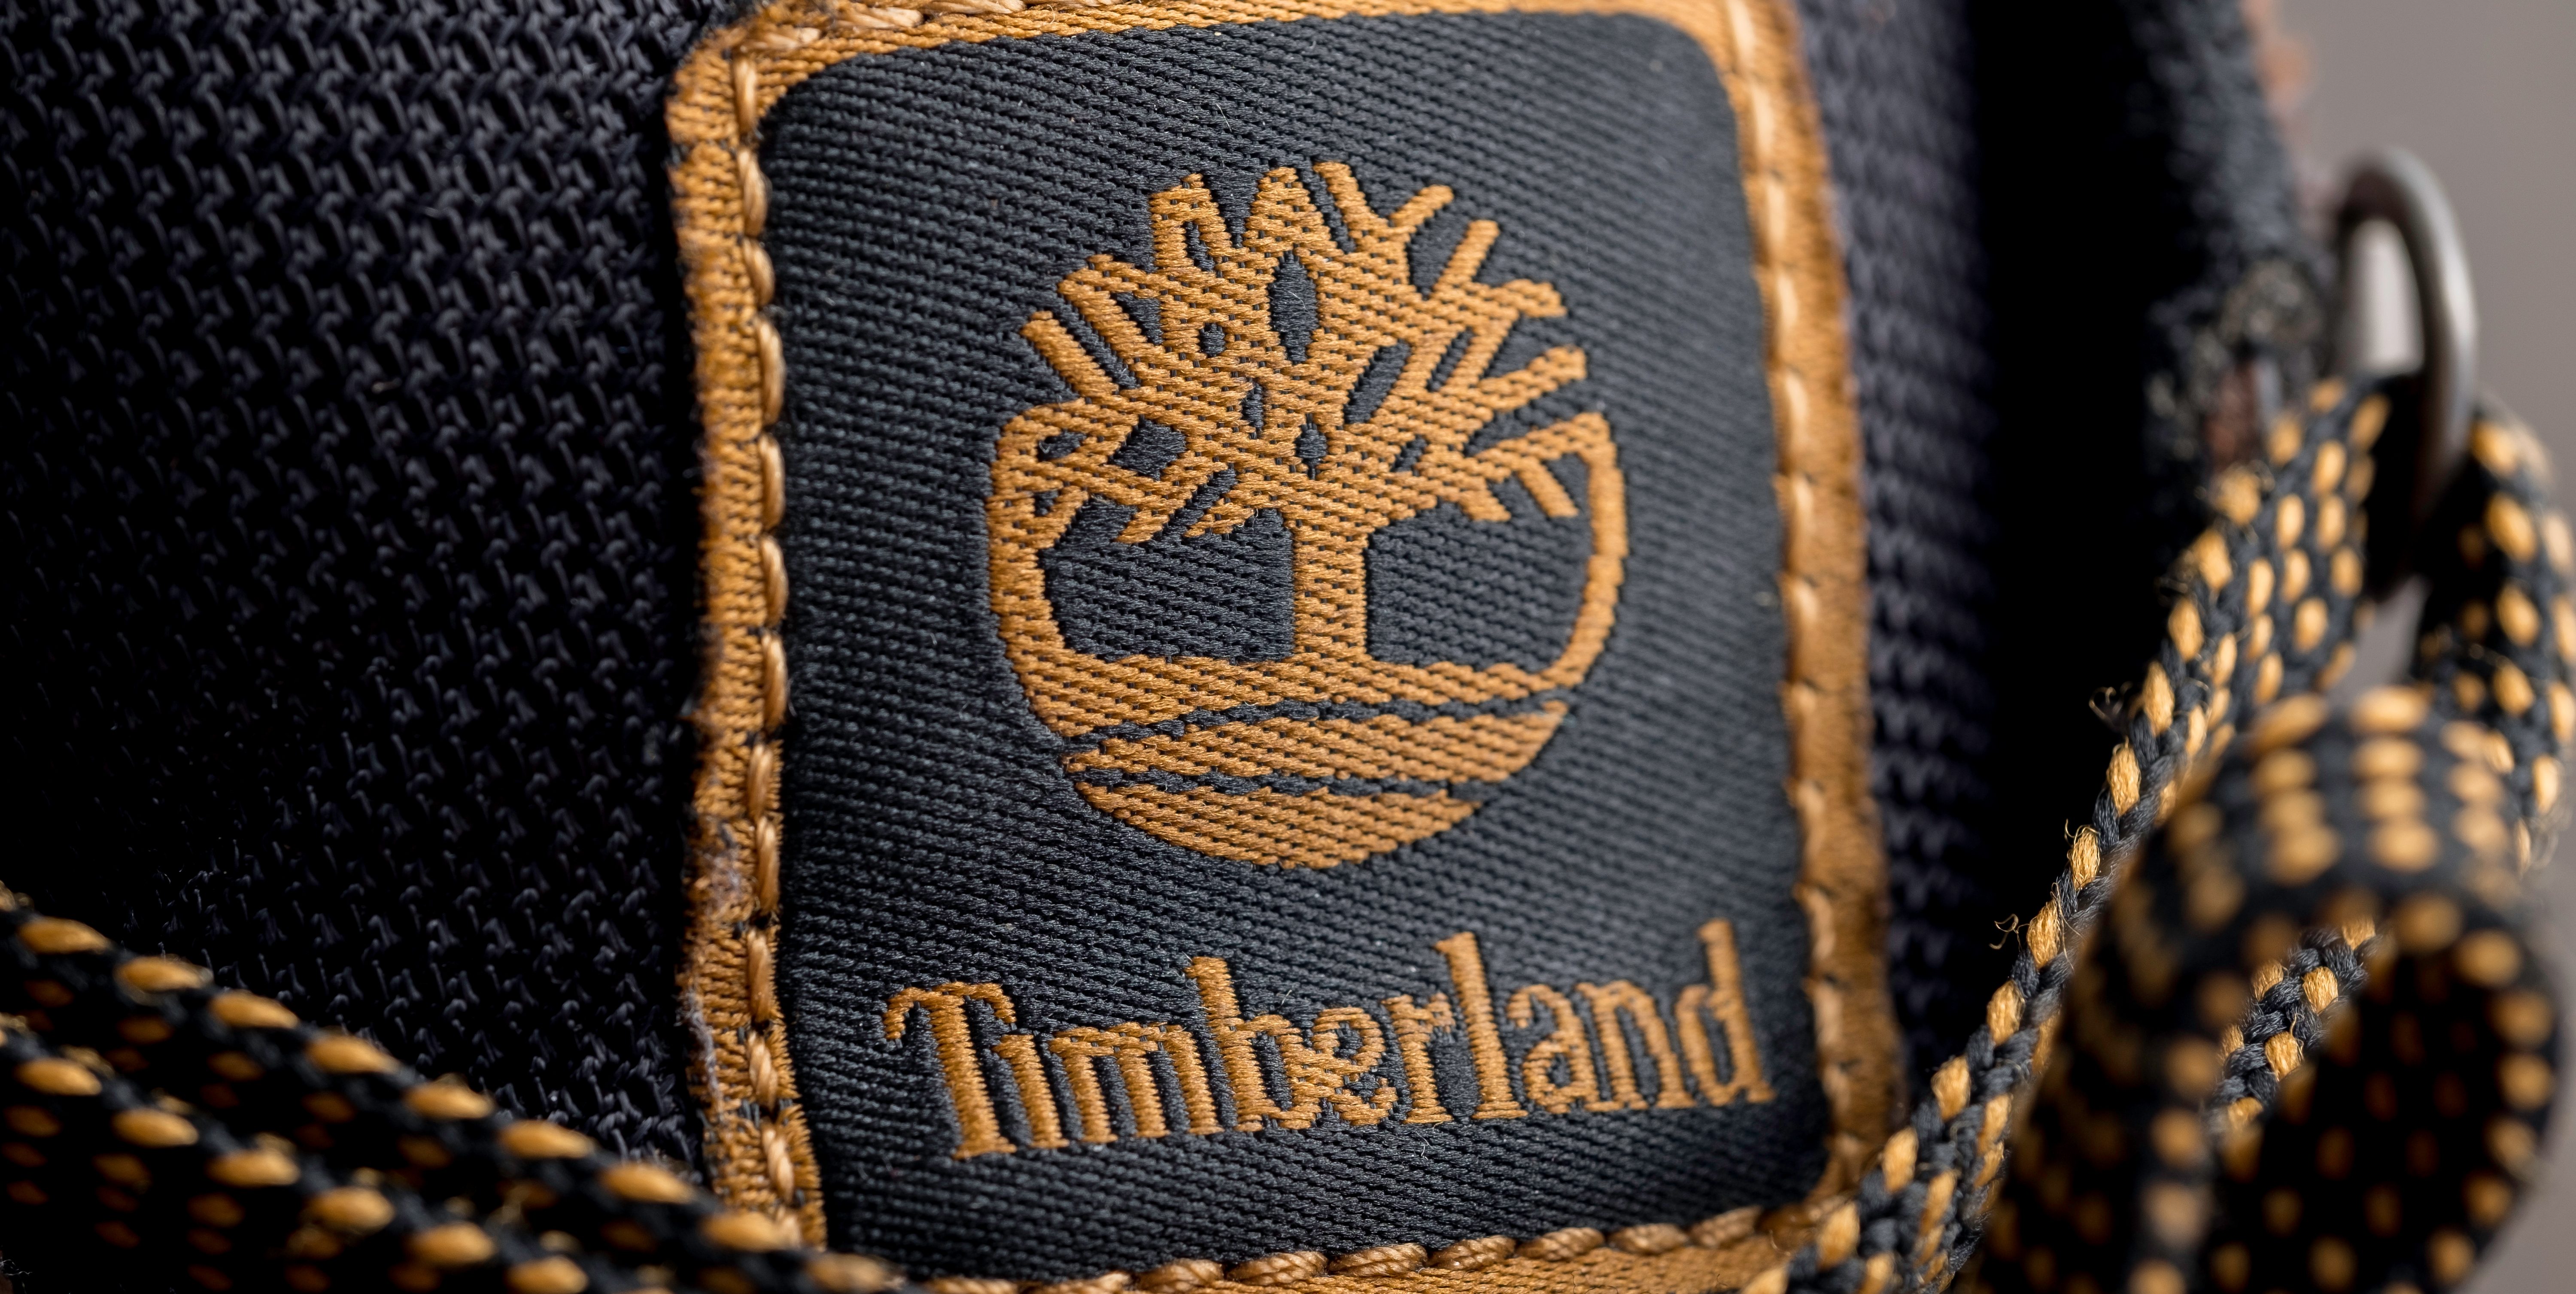 Los mejores zapatos y botas de hombre marca Timberland por menos de $100 |  La Opinión